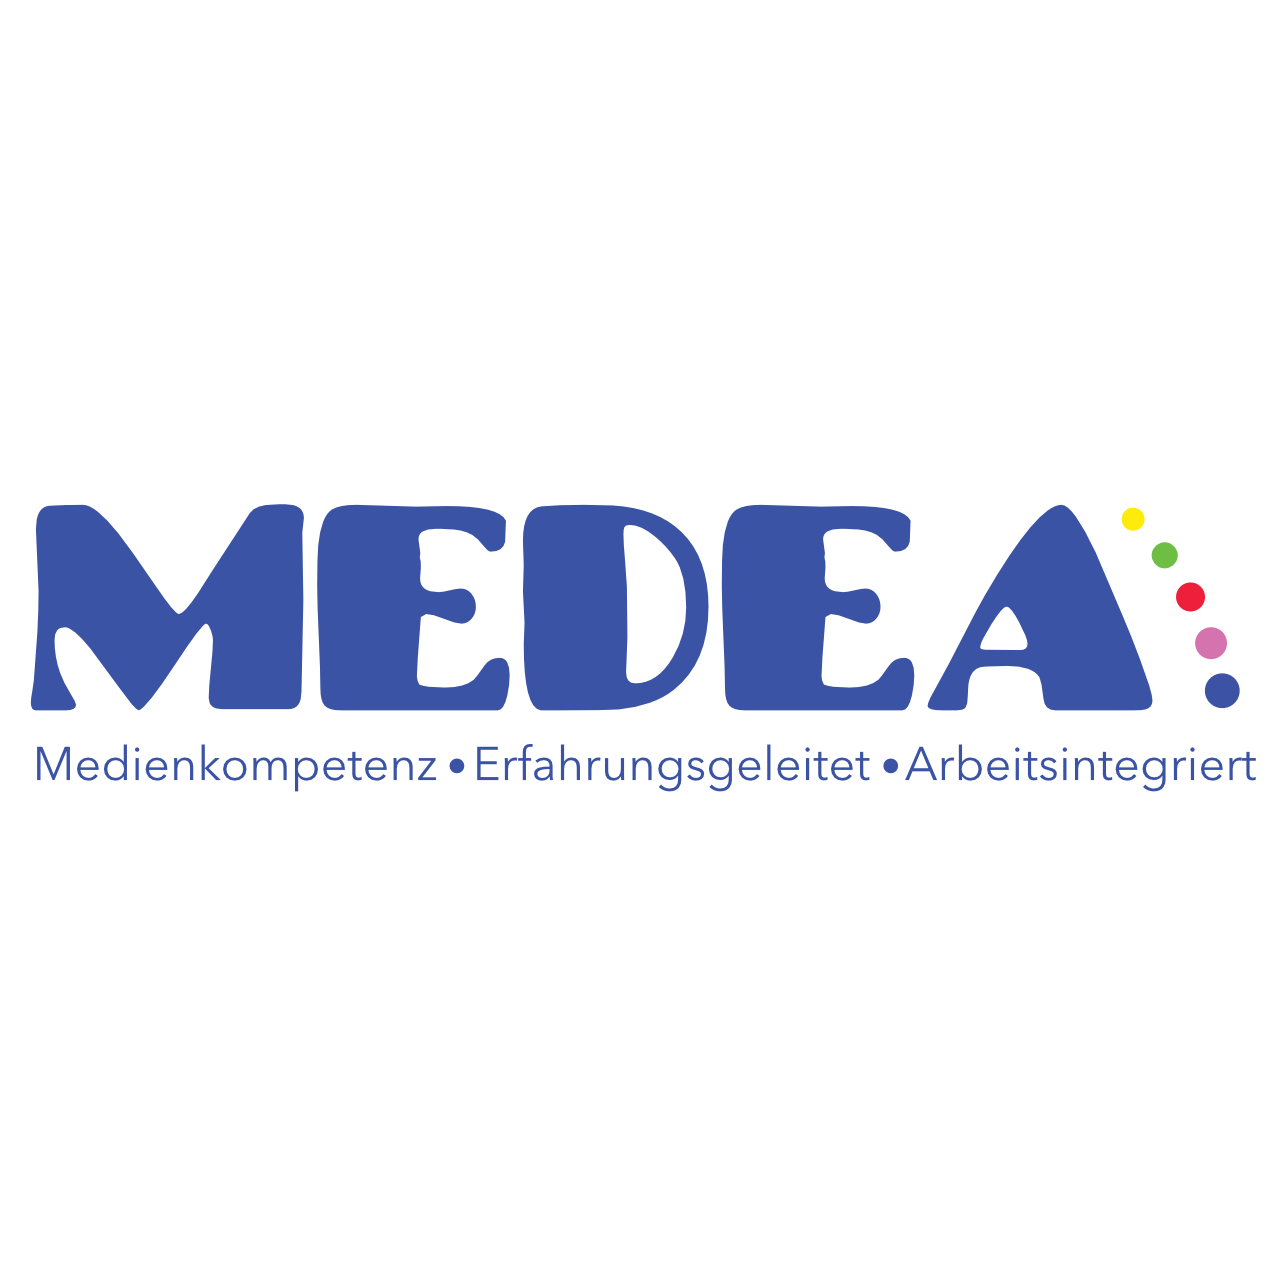 MEDEA – Medienkompetenz • Erfahrungsgeleitet • Arbeitsintegriert